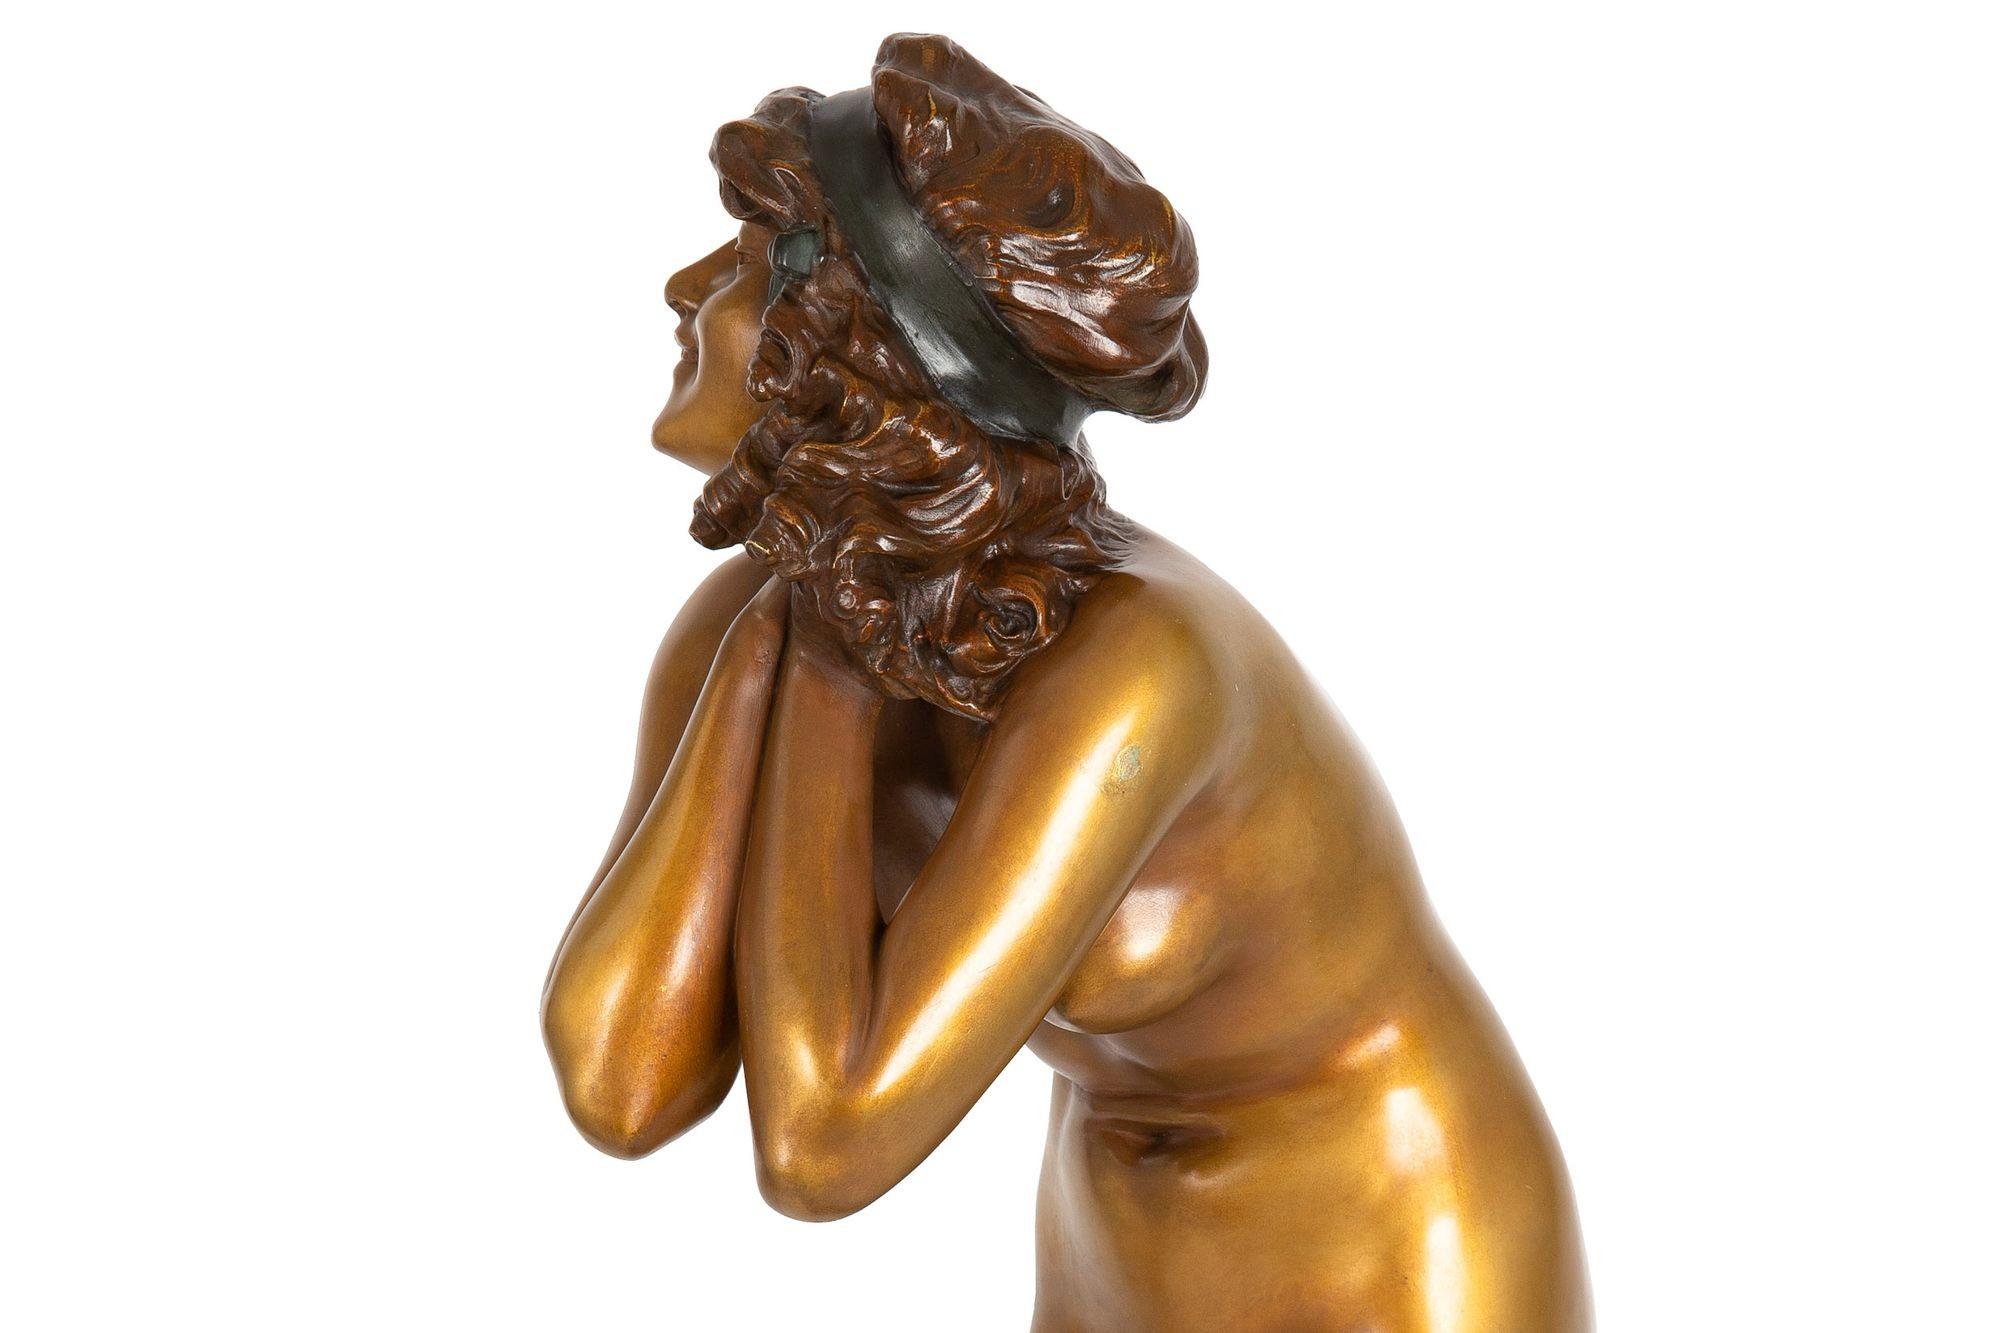 Rare Art Deco Bronze Sculpture “Mischievous” by Paul Philippe For Sale 6